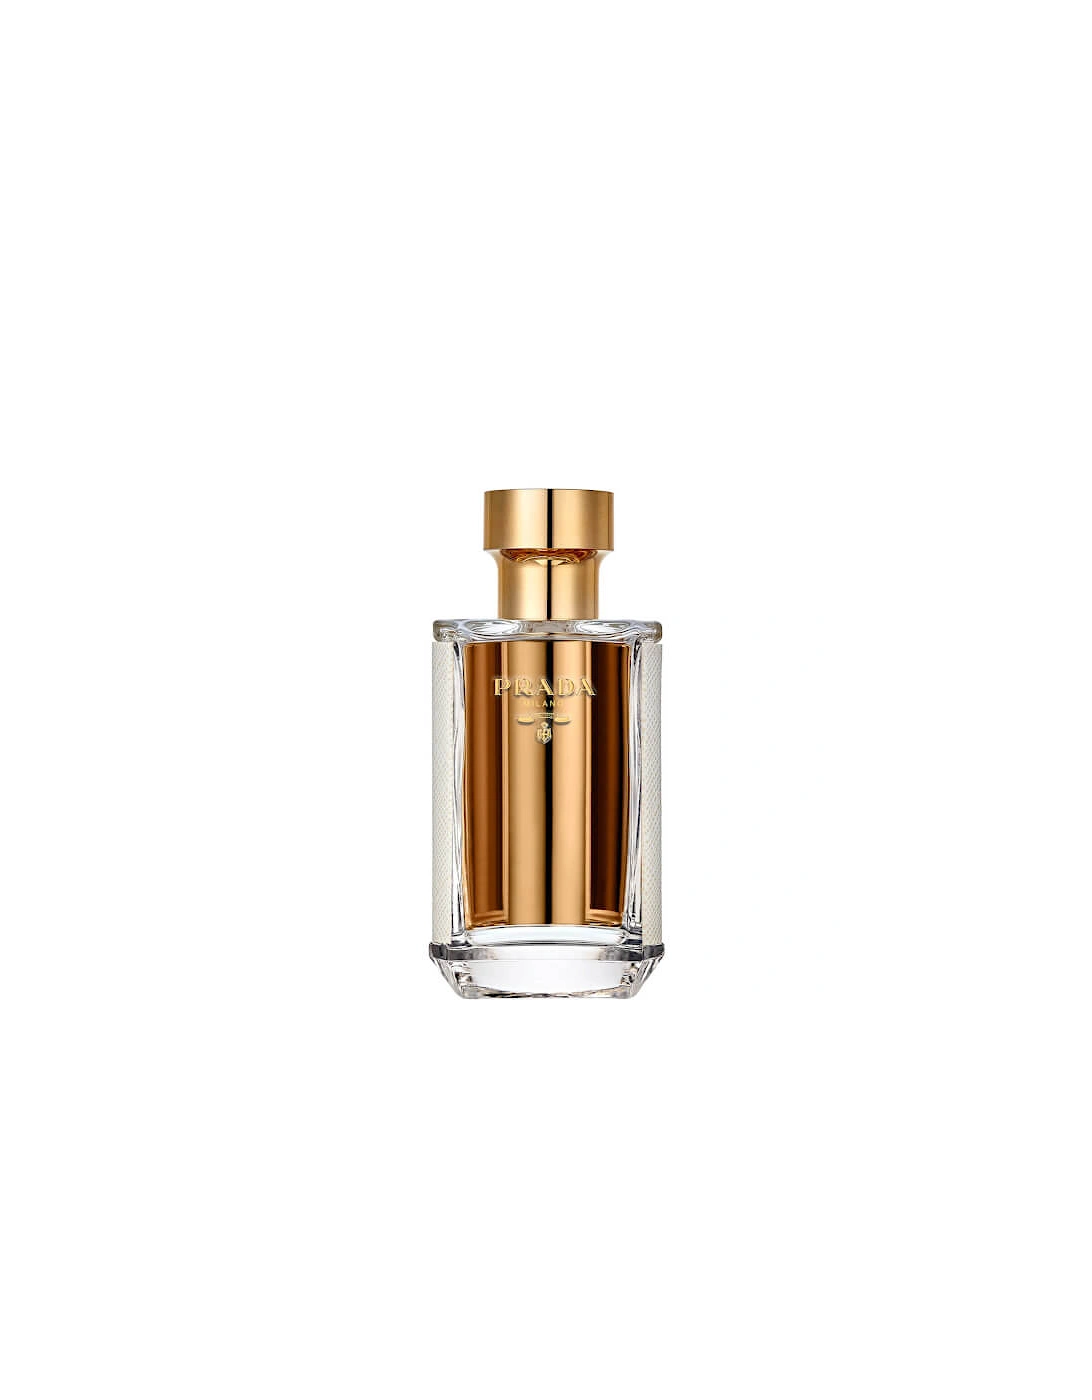 La Femme Eau de Parfum - 50ml, 2 of 1